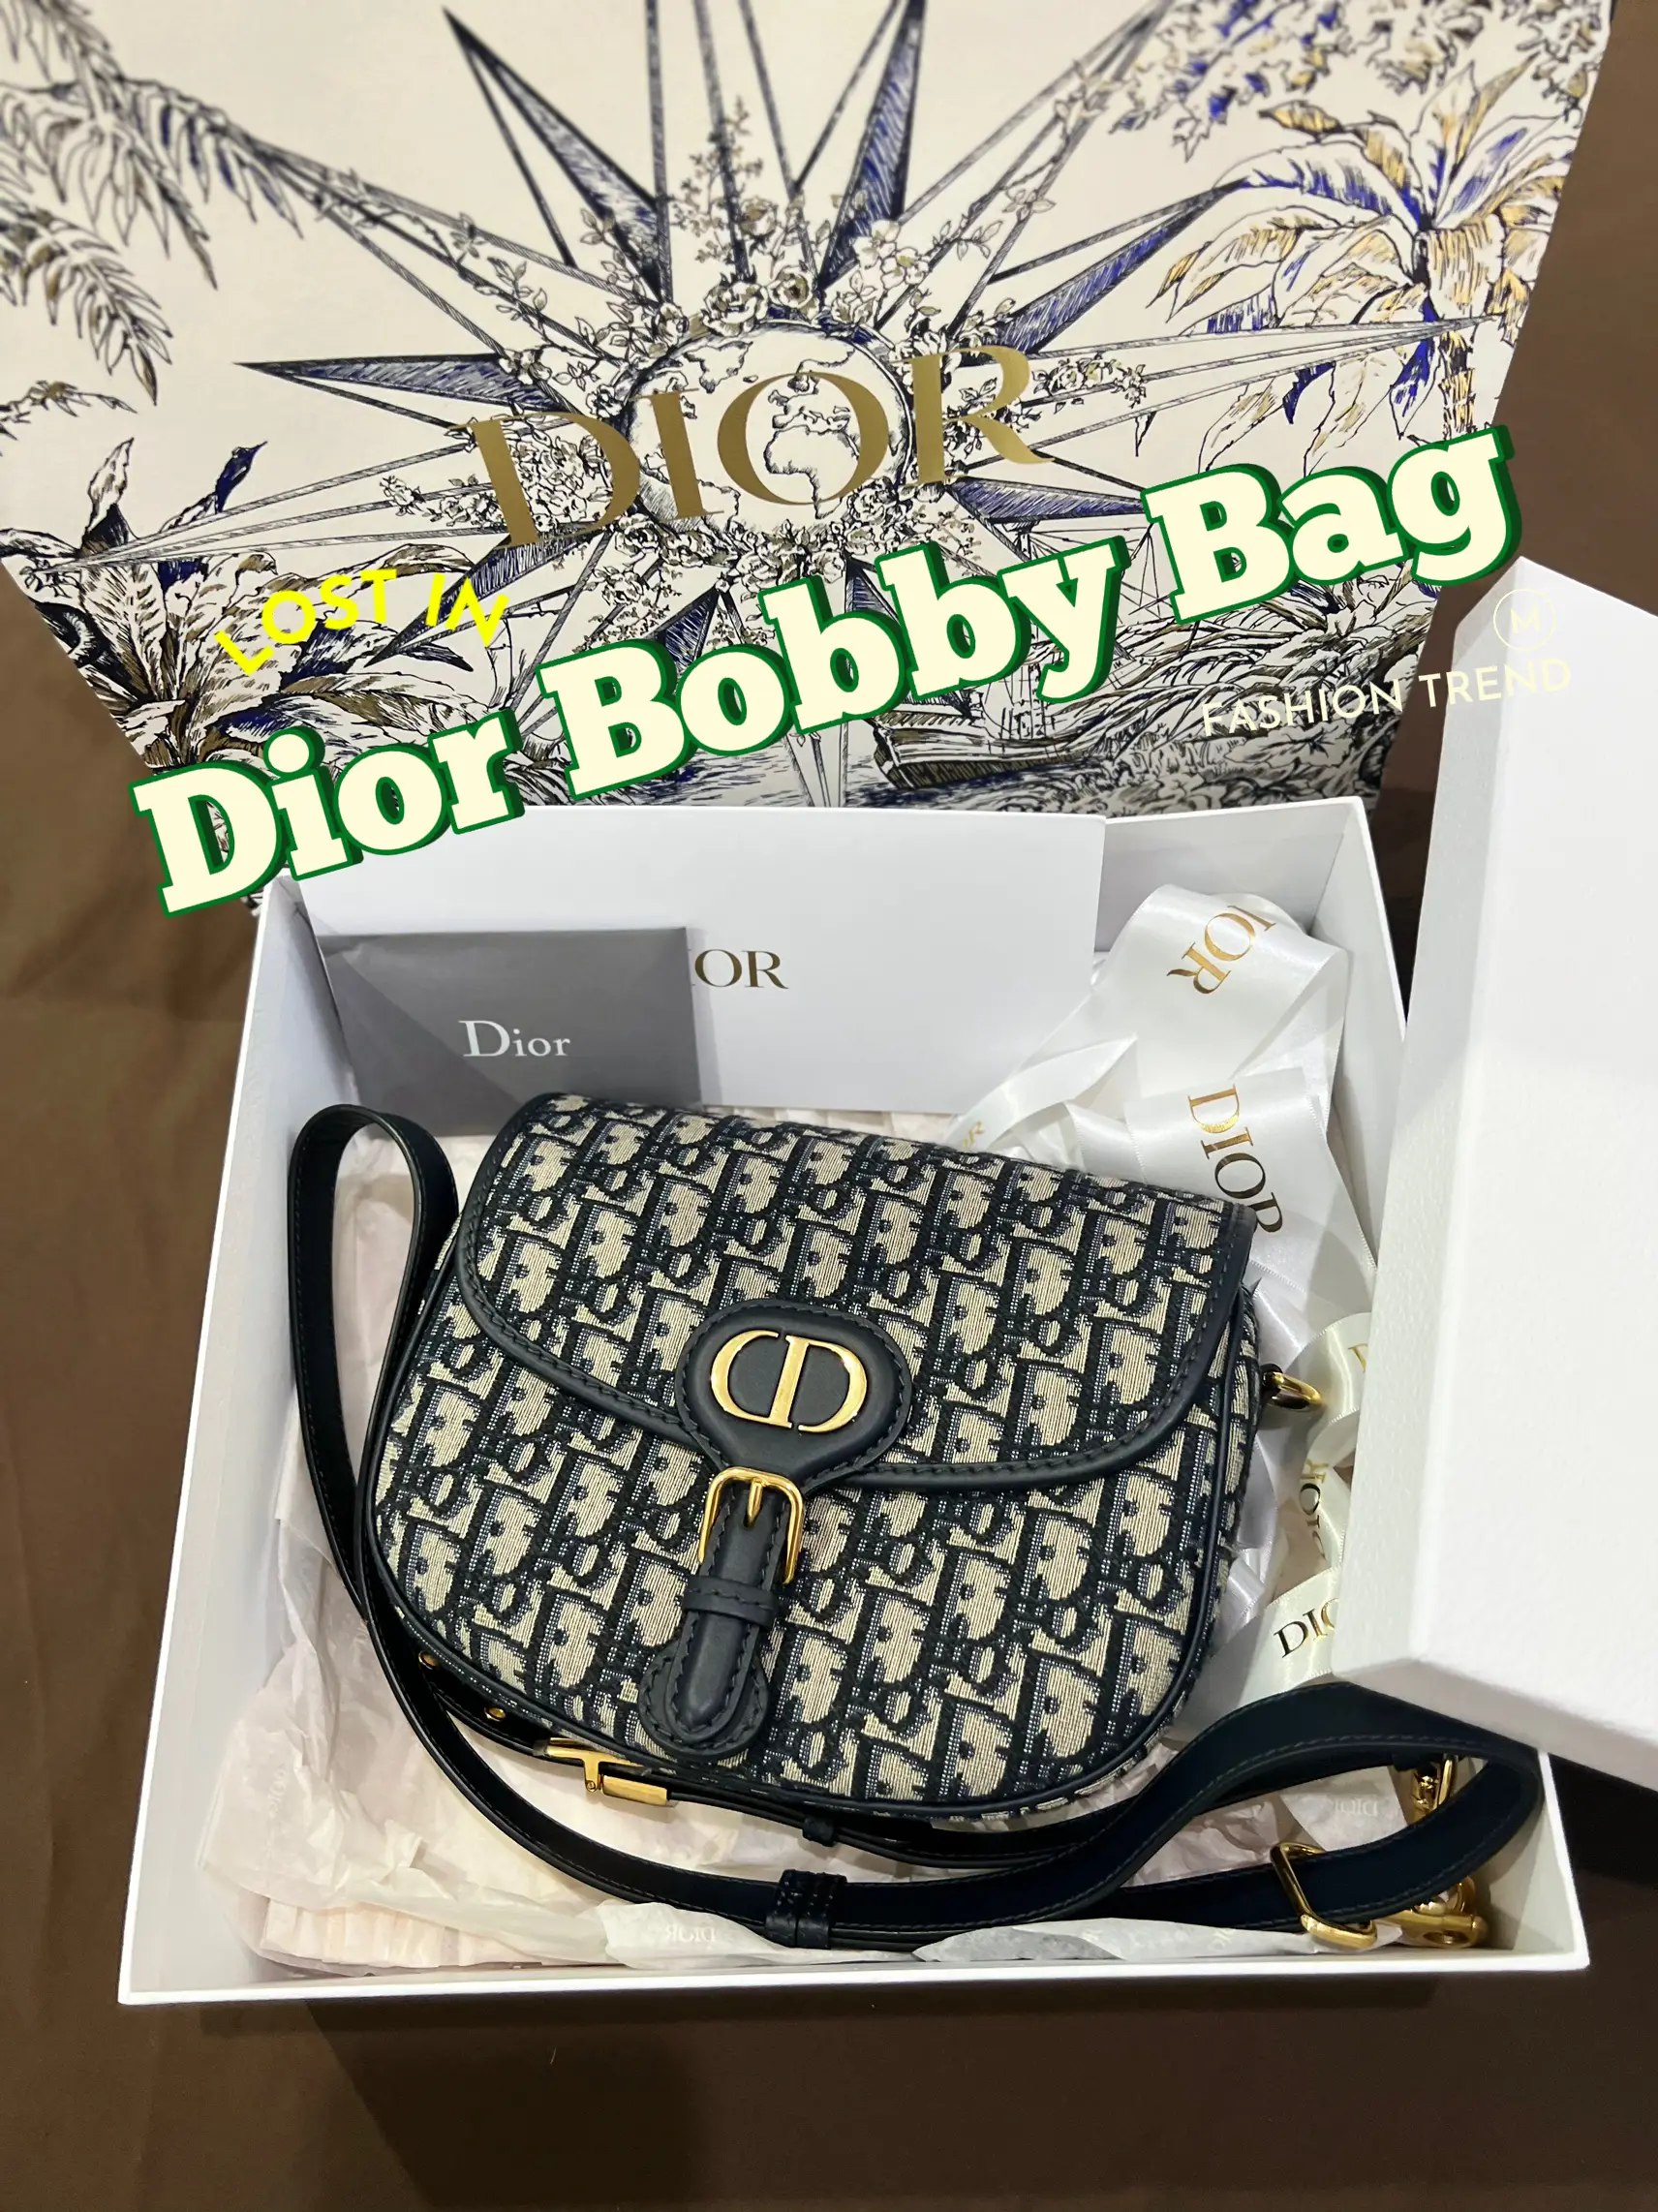 Unboxing] Dior Bobby Bag - Blue Dior Oblique Jacquard 